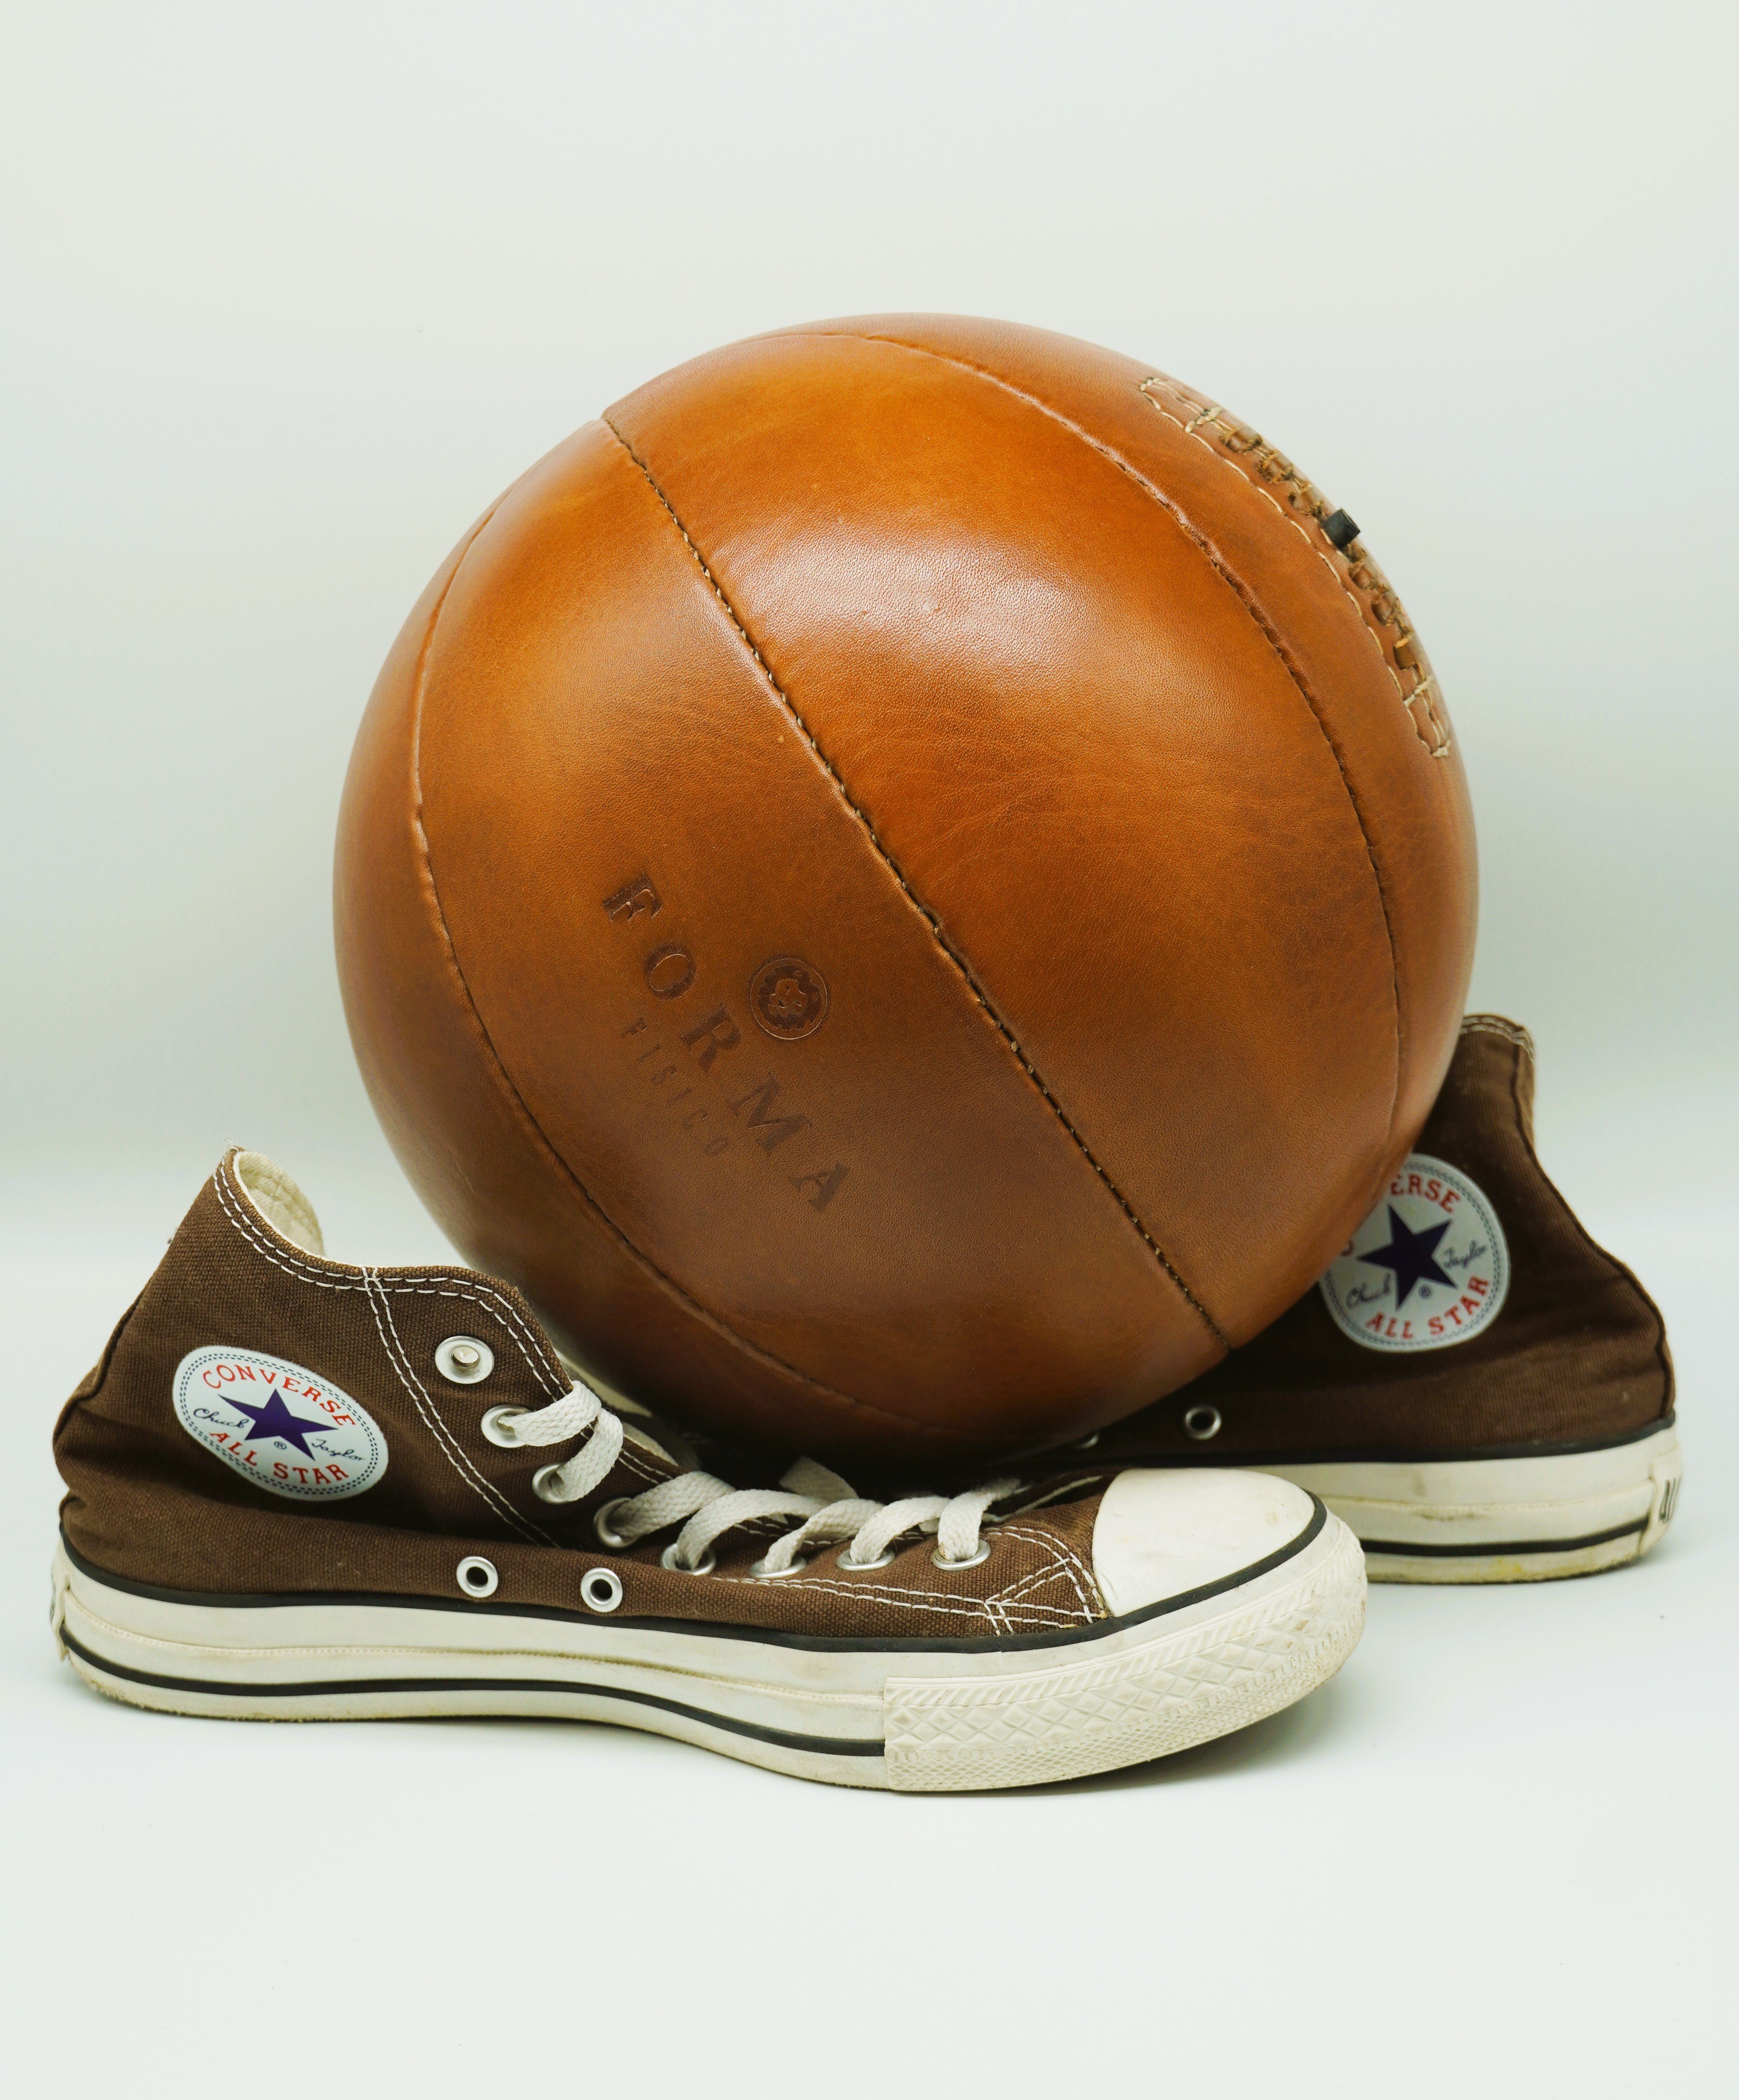 Vintage-Basketball Rindsleder Basketball Forma Retro Fisico Leder,